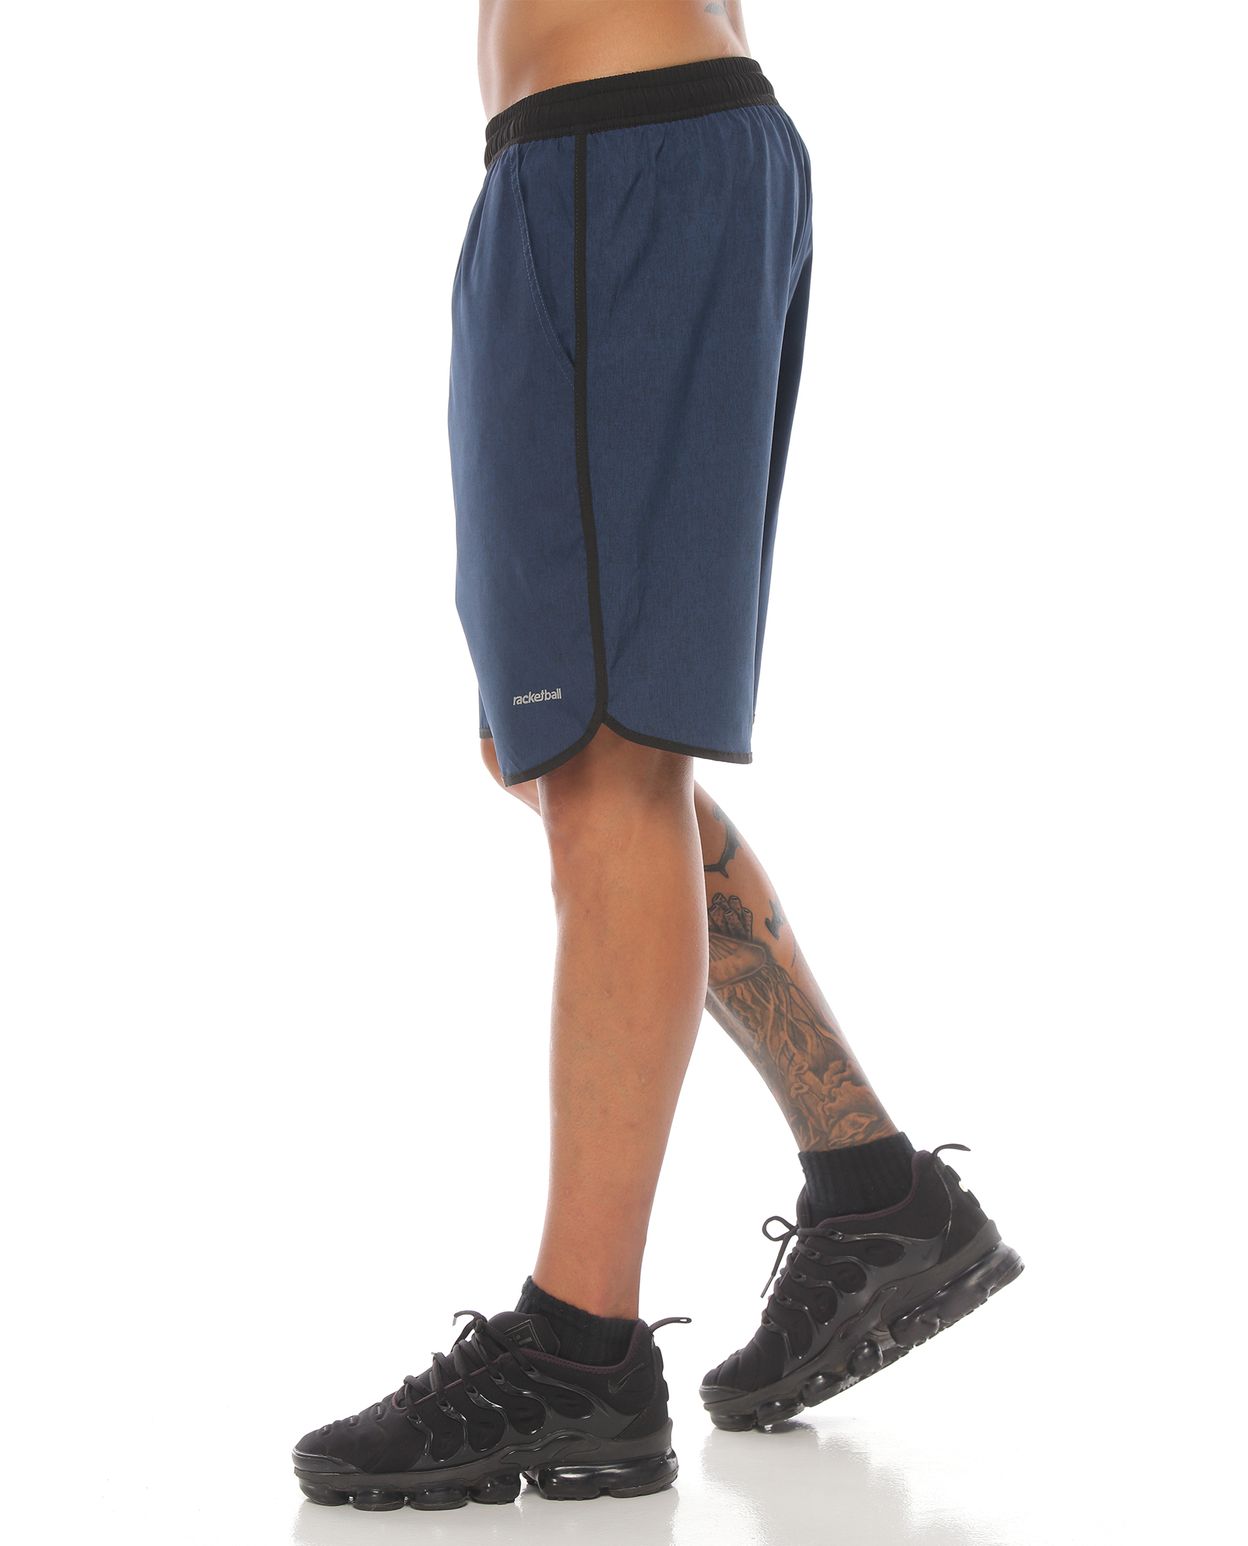 pantaloneta deportiva color petroleo negro para hombre parte lateral izquierda con logo racketball